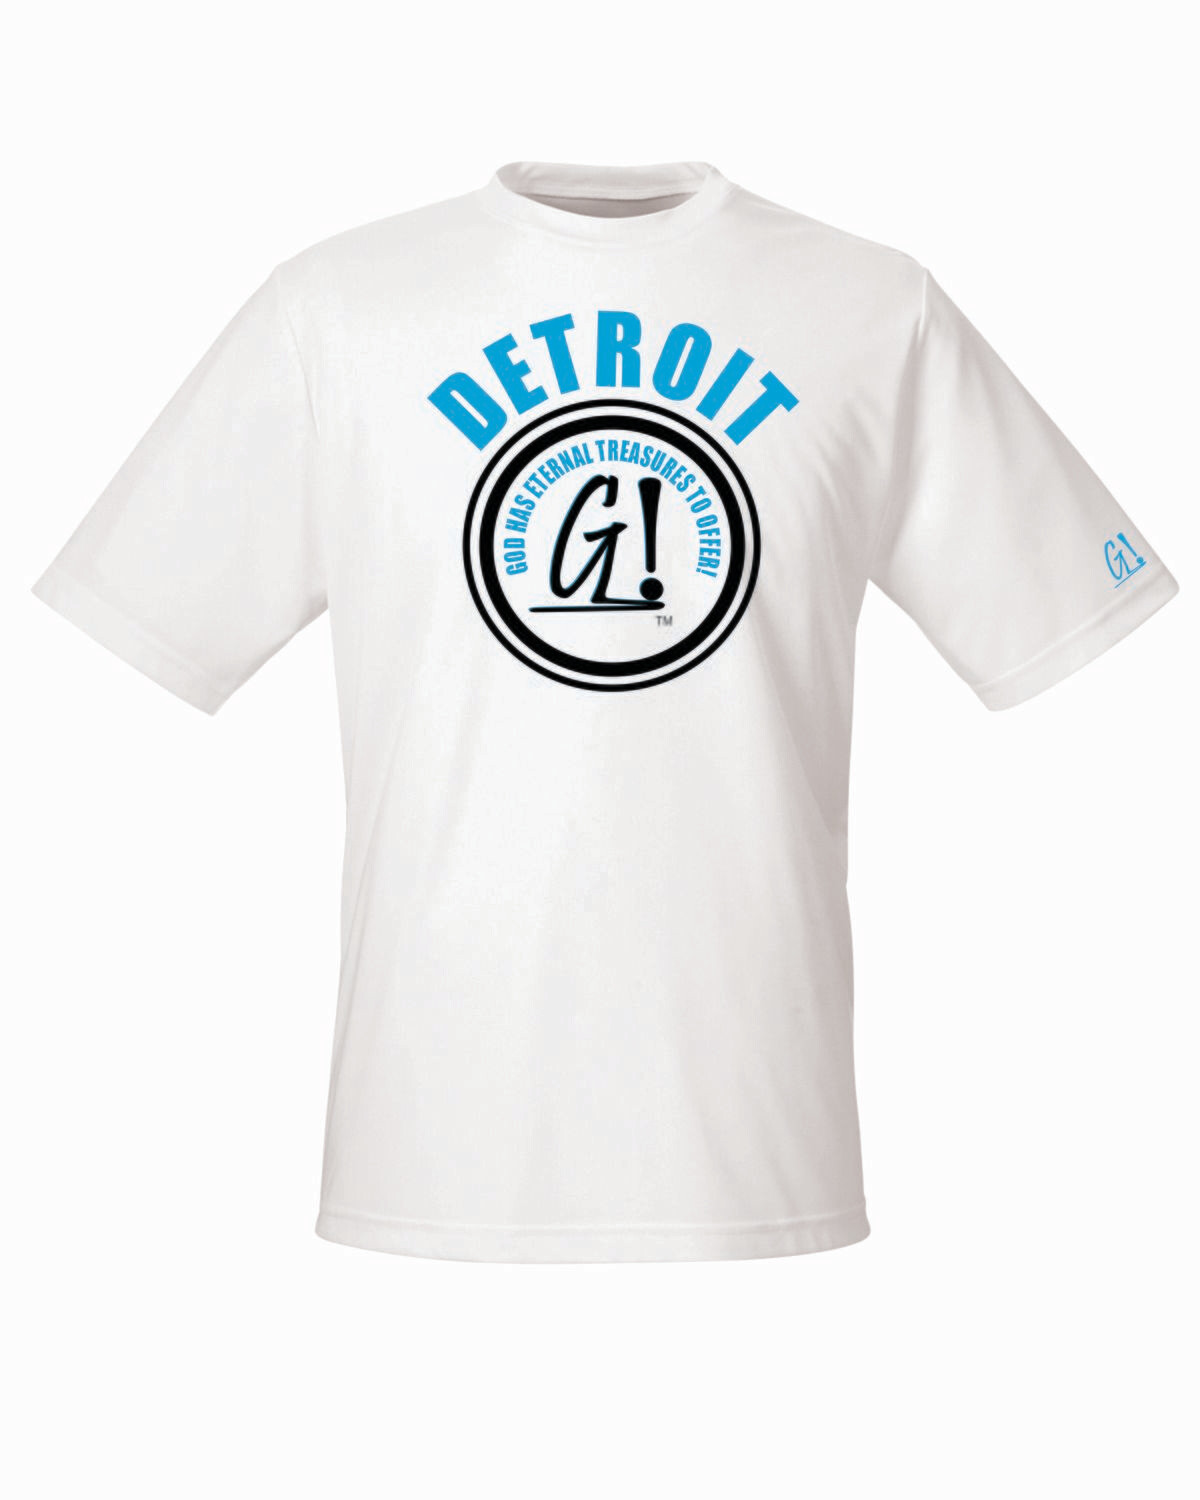 Detroit G! T-Shirt